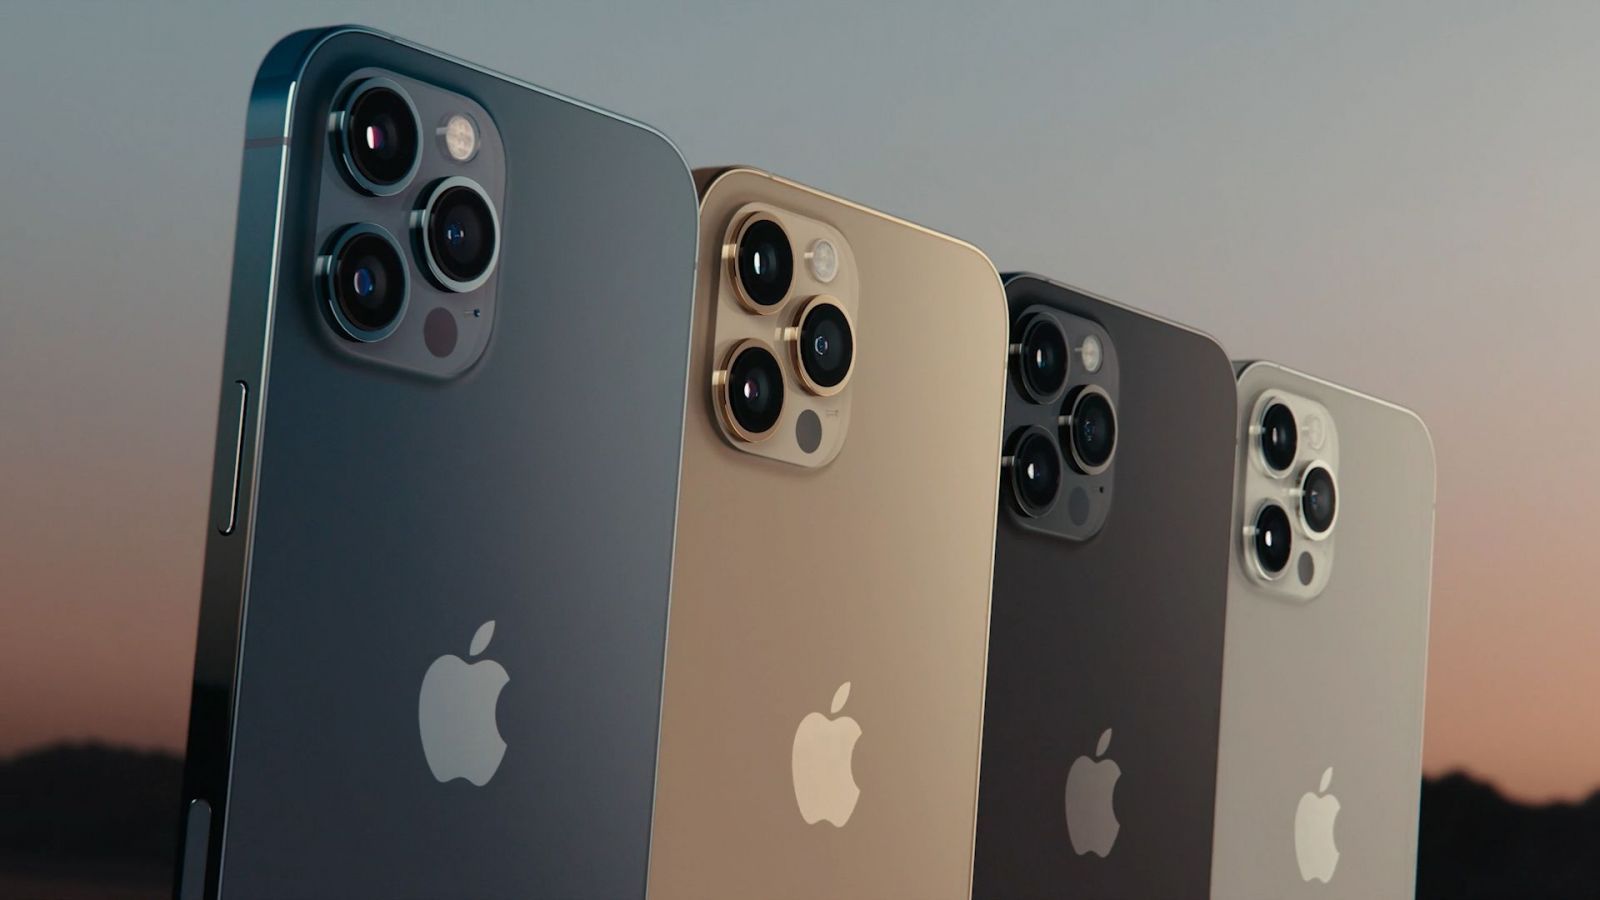 Apple musí k iPhonu 12 pribaliť plnohodnotnú nabíjačku, rozhodli úrady v Brazílii. Nepresvedčili ich environmentálne argumenty